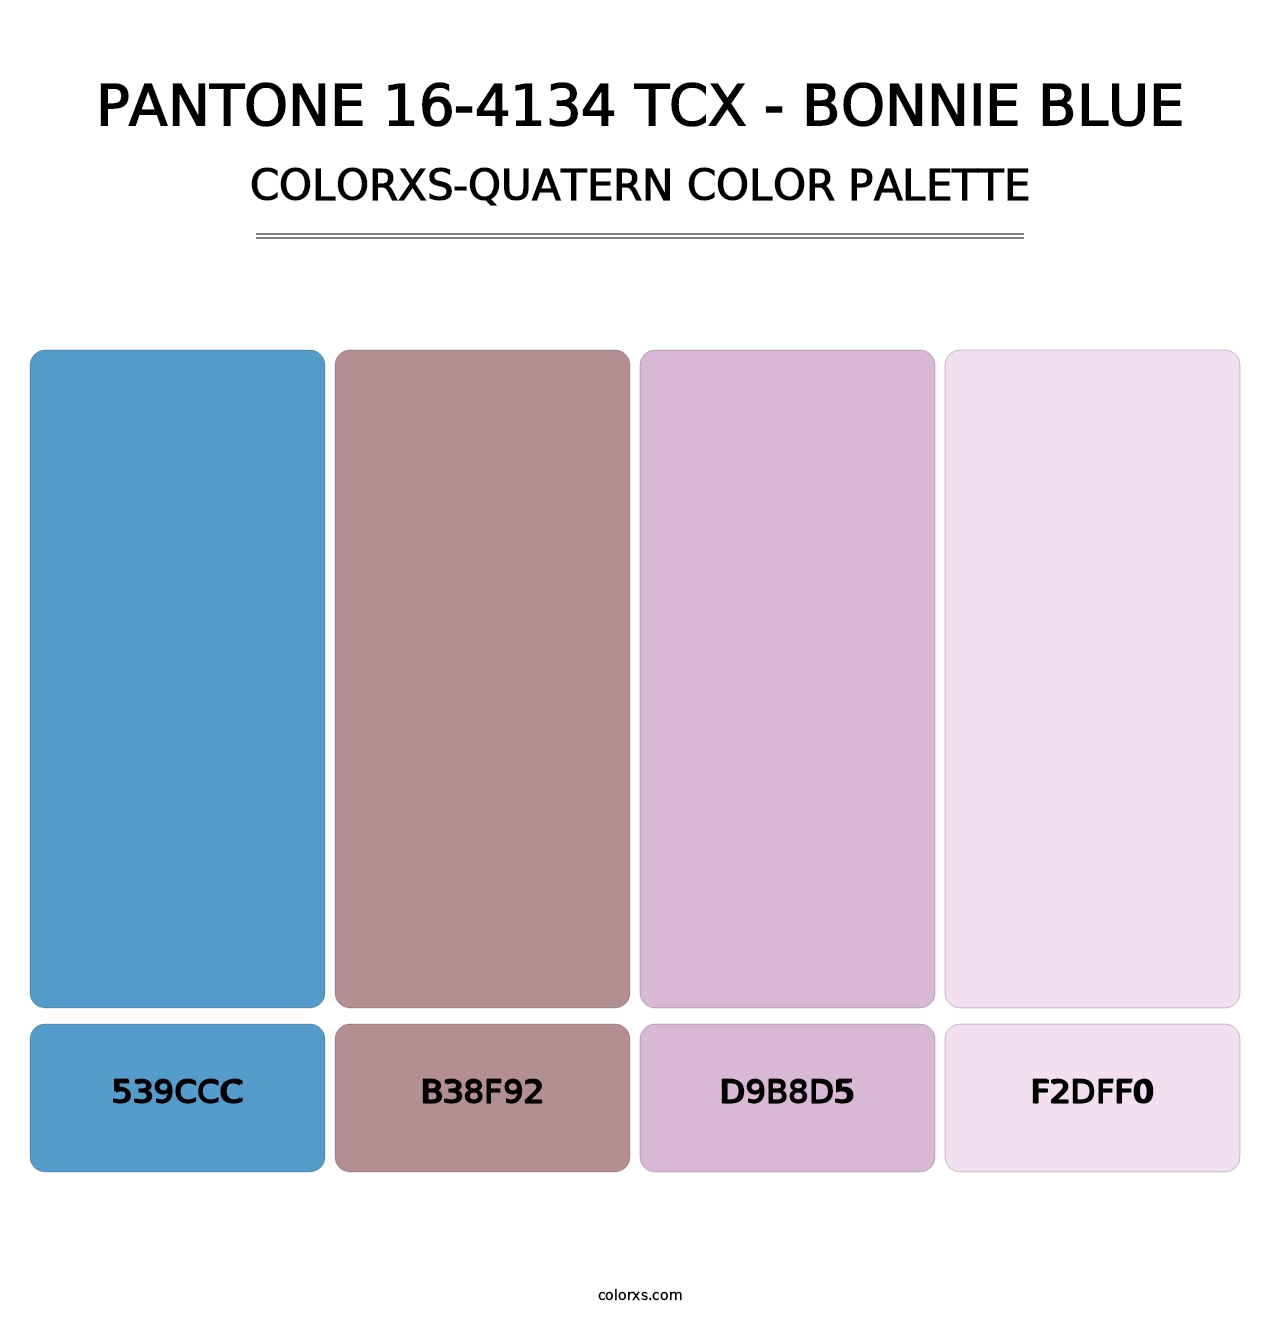 PANTONE 16-4134 TCX - Bonnie Blue - Colorxs Quatern Palette